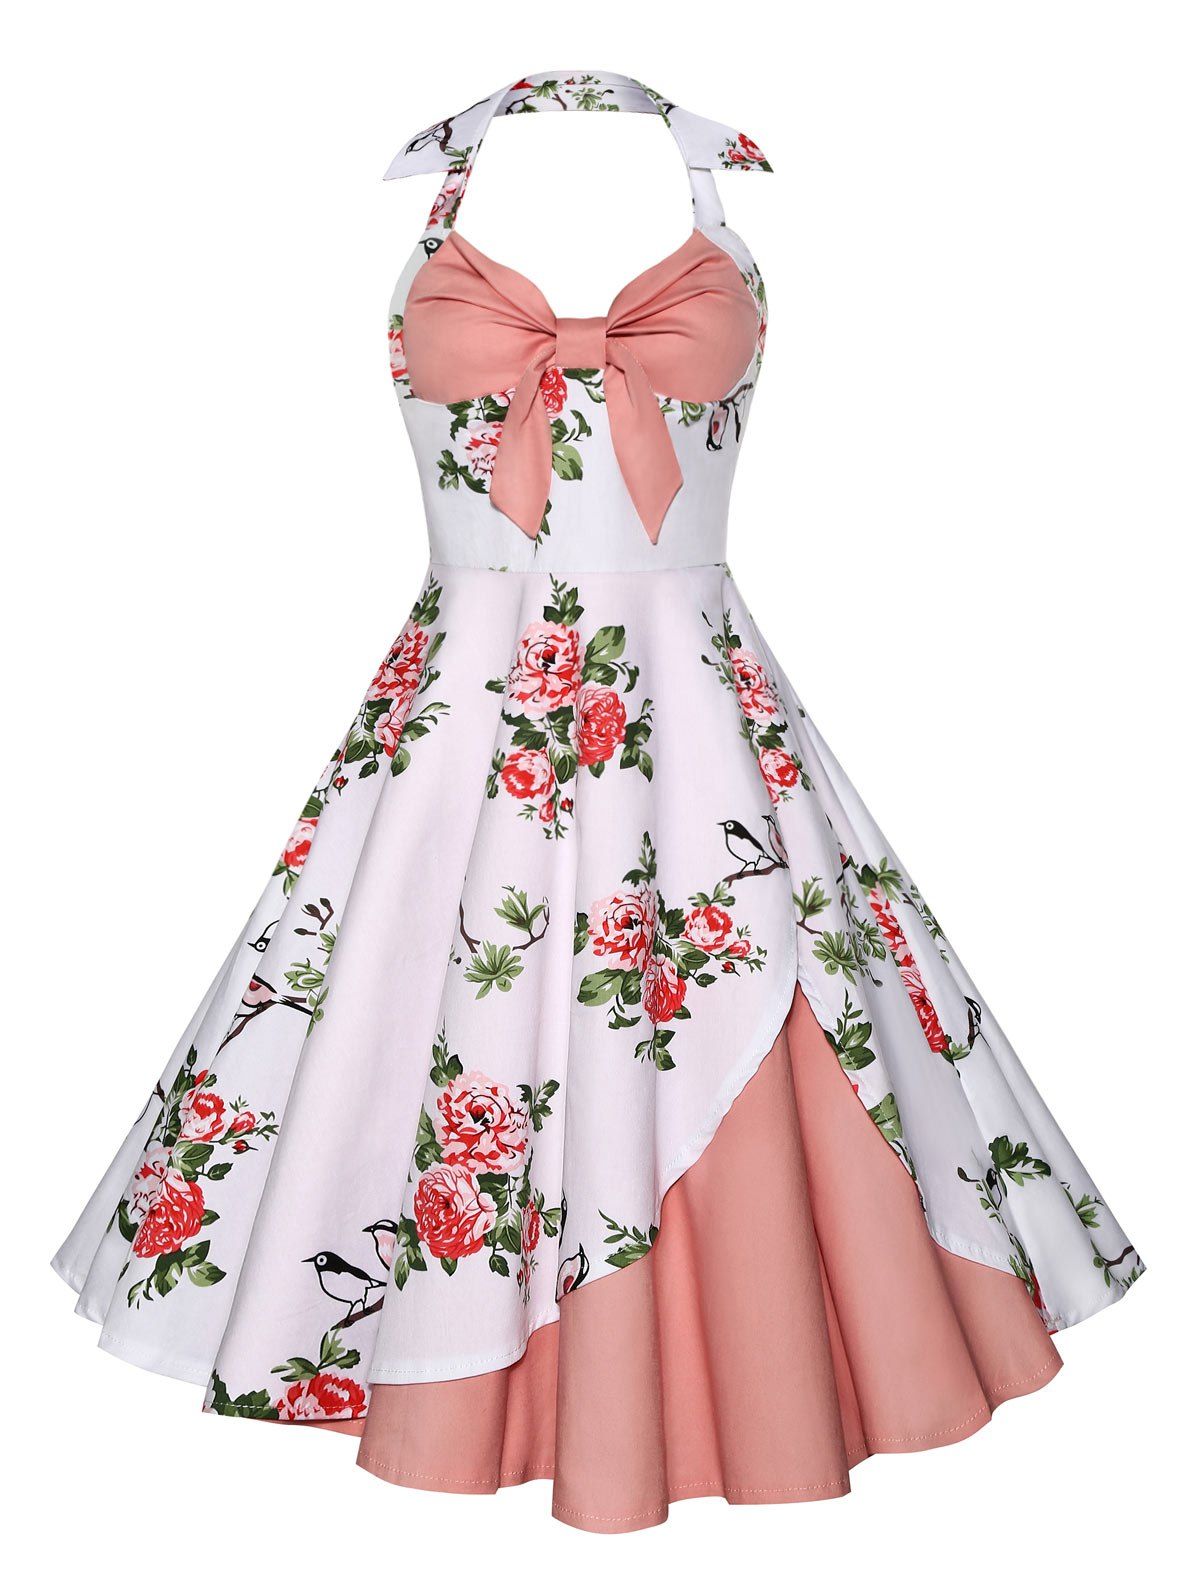 [37% OFF] Halter Neck Floral A Line Vintage Dress | Rosegal
